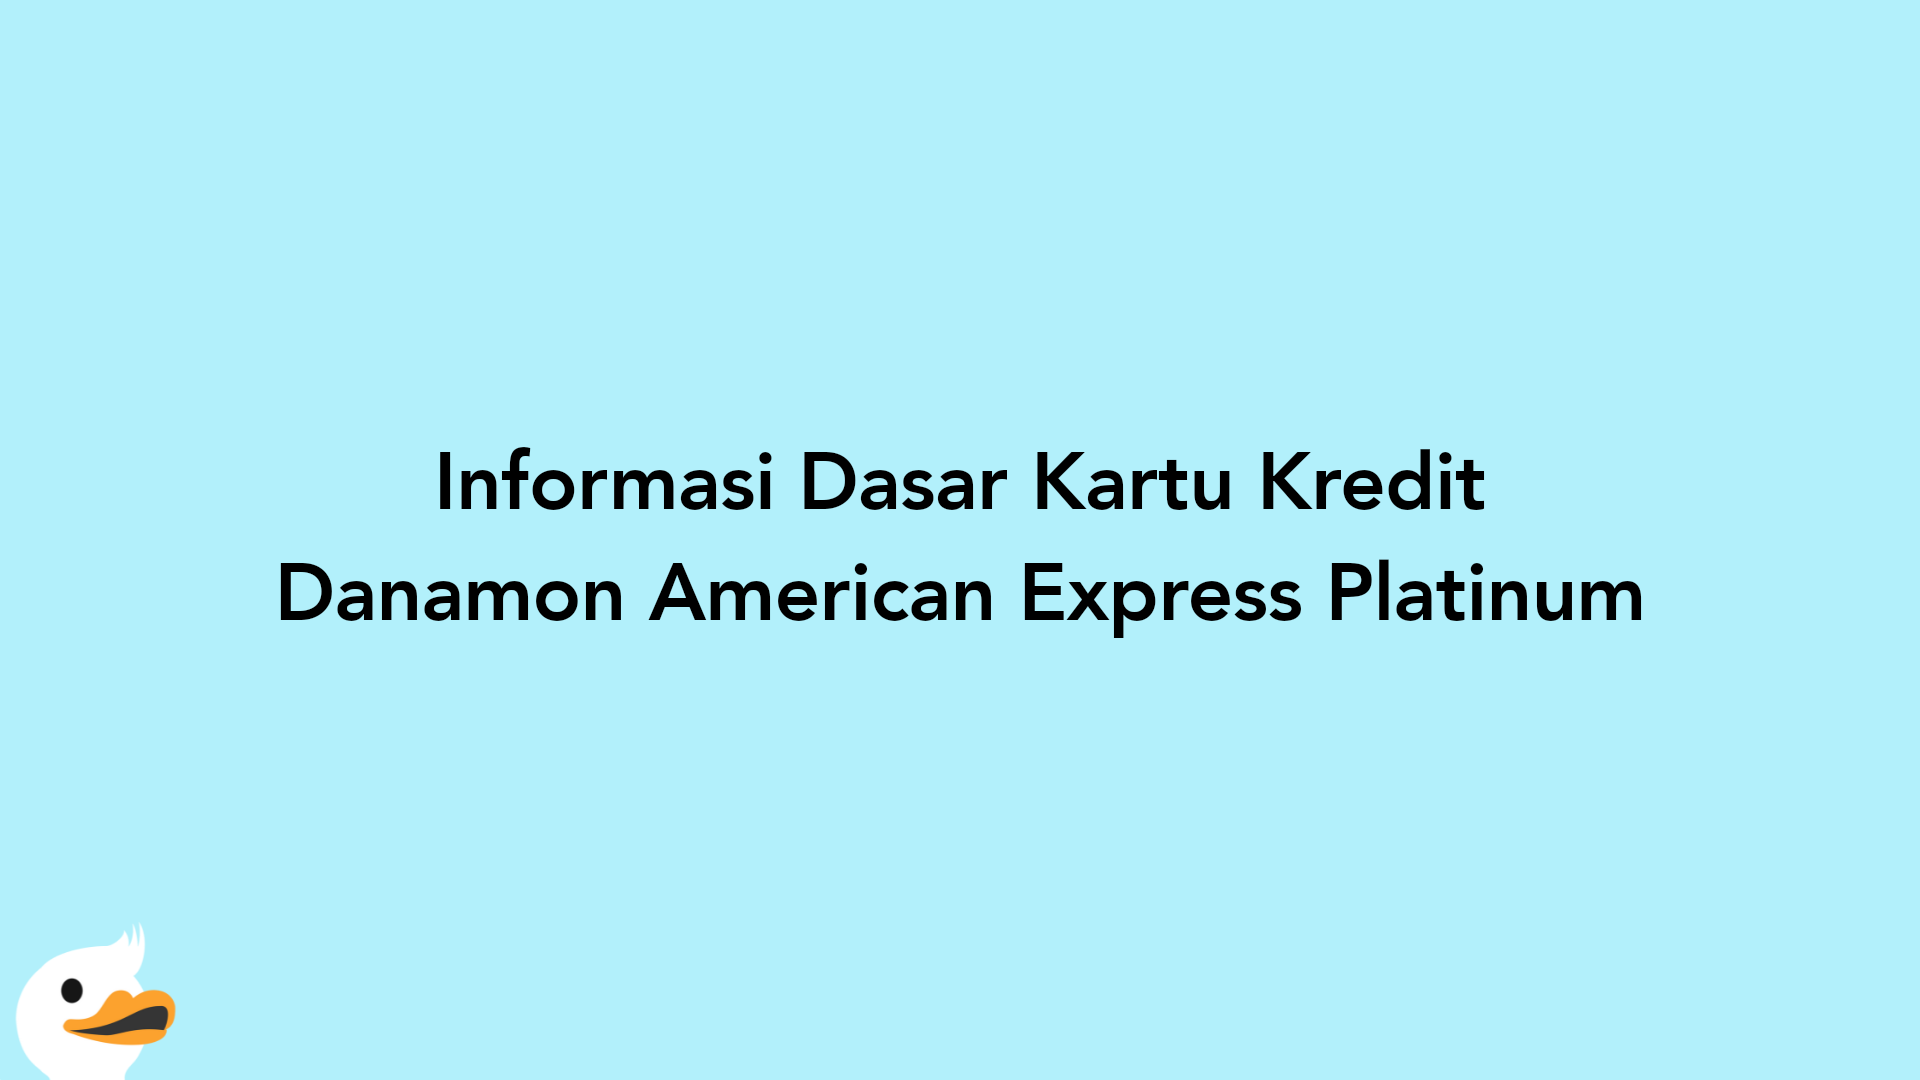 Informasi Dasar Kartu Kredit Danamon American Express Platinum